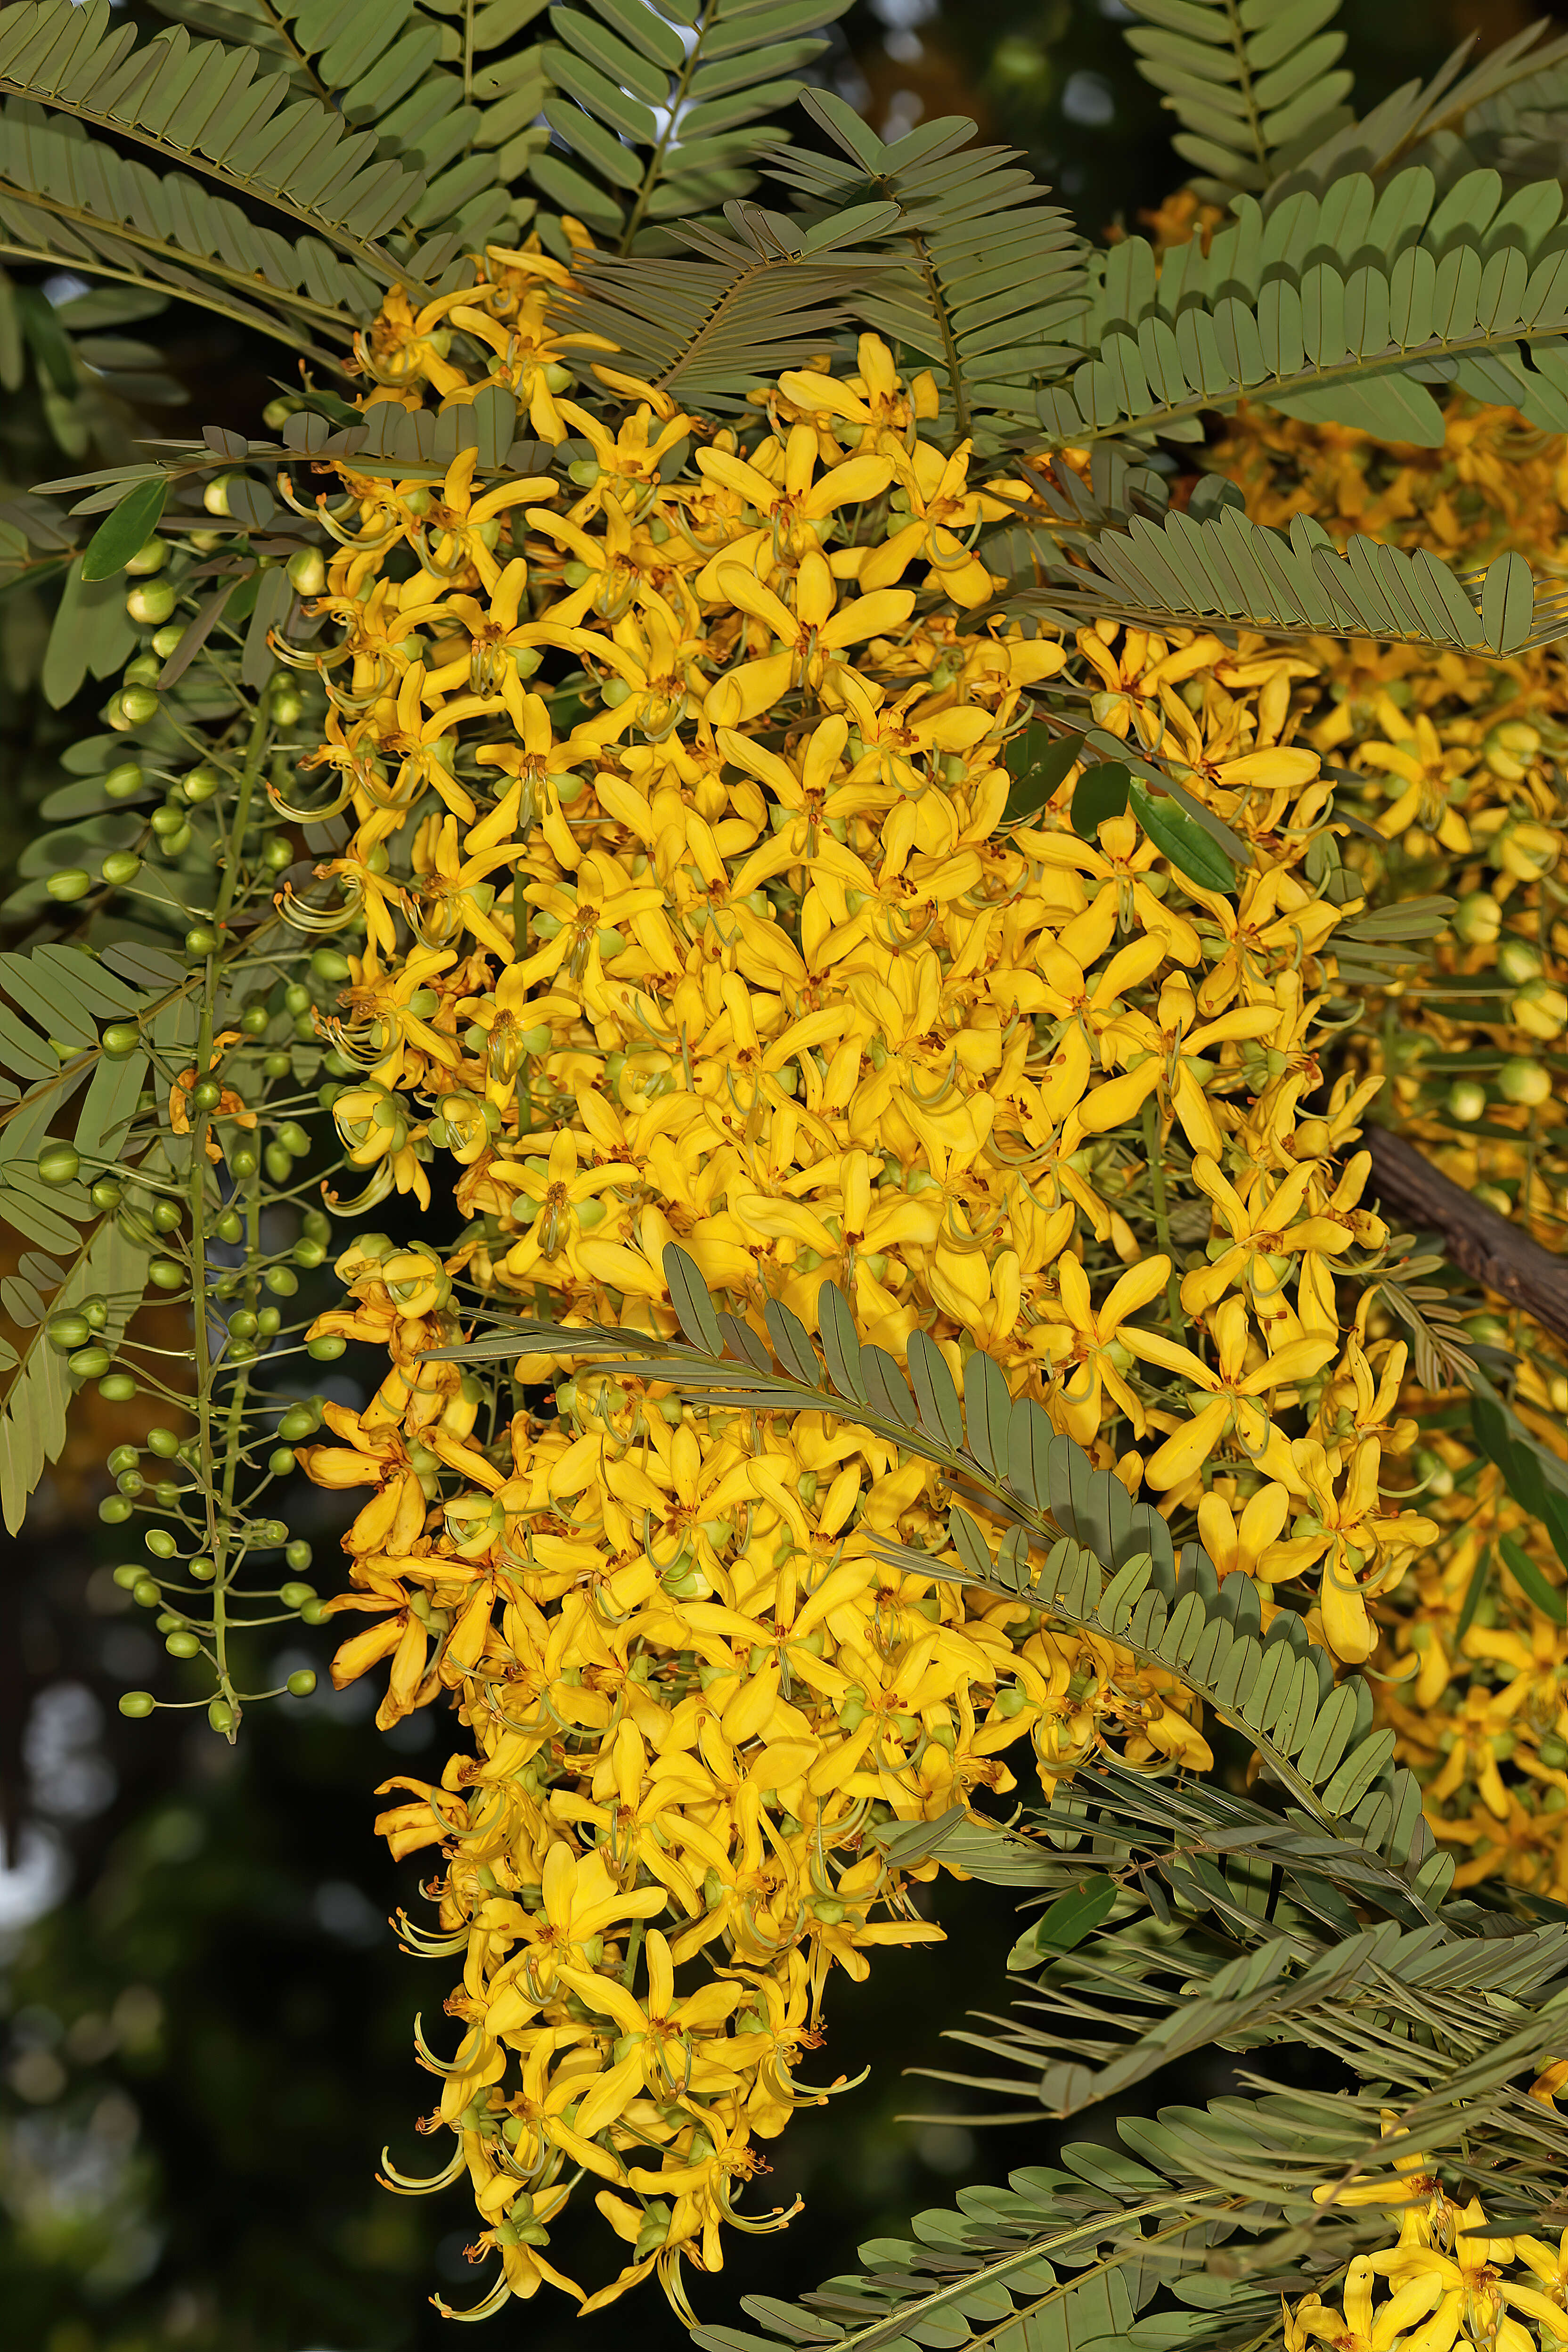 Image of Cassia ferruginea (Schrad.) DC.